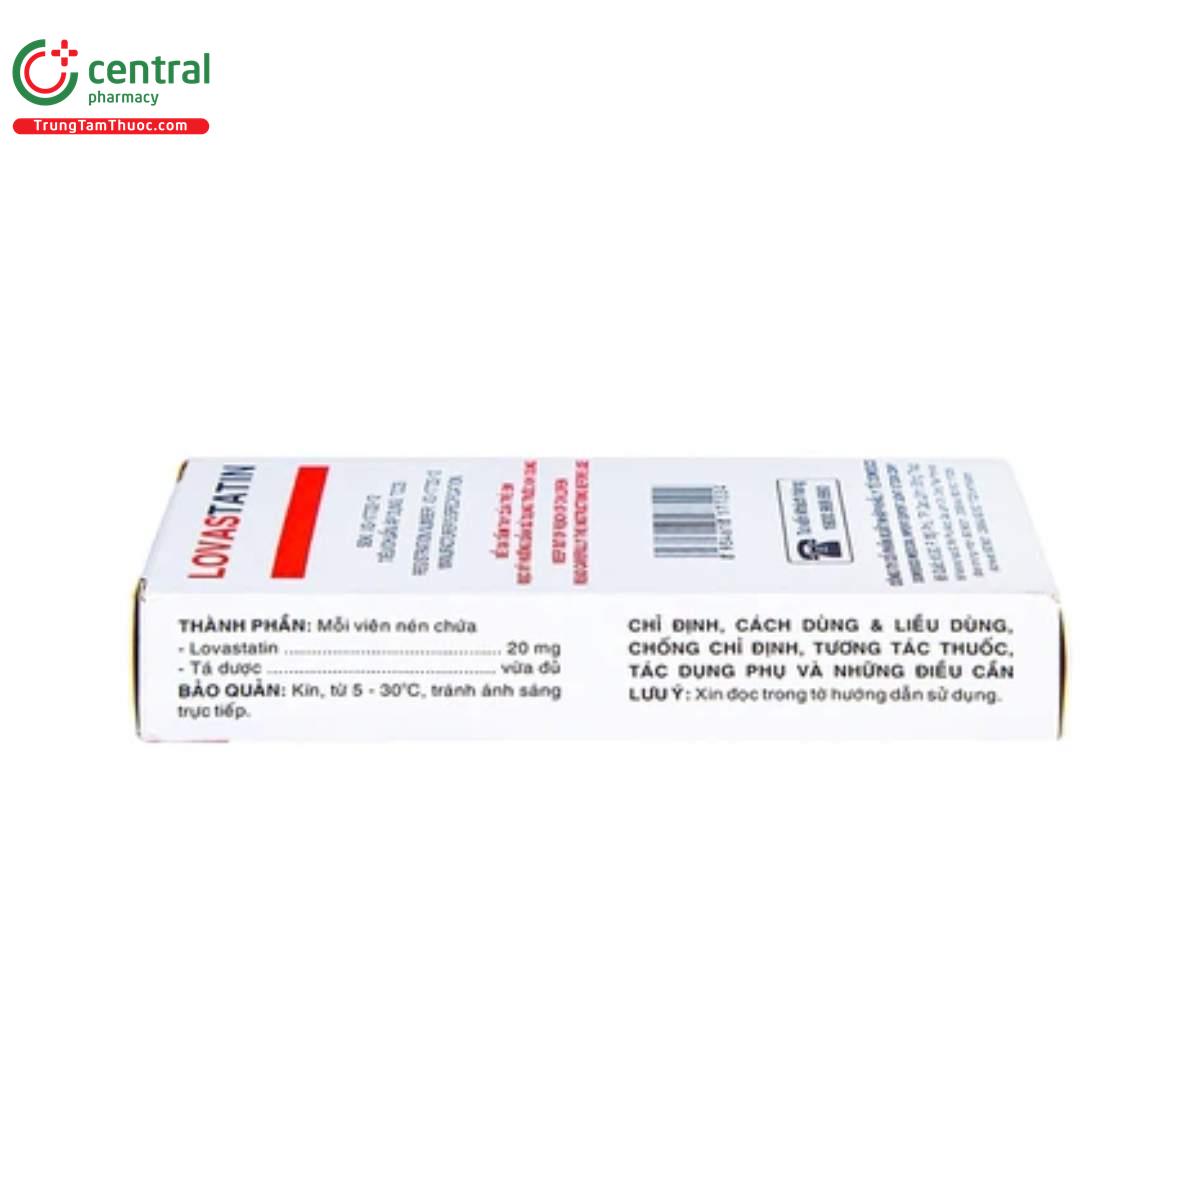 lovastatin 20 mg domesco 6 R7805